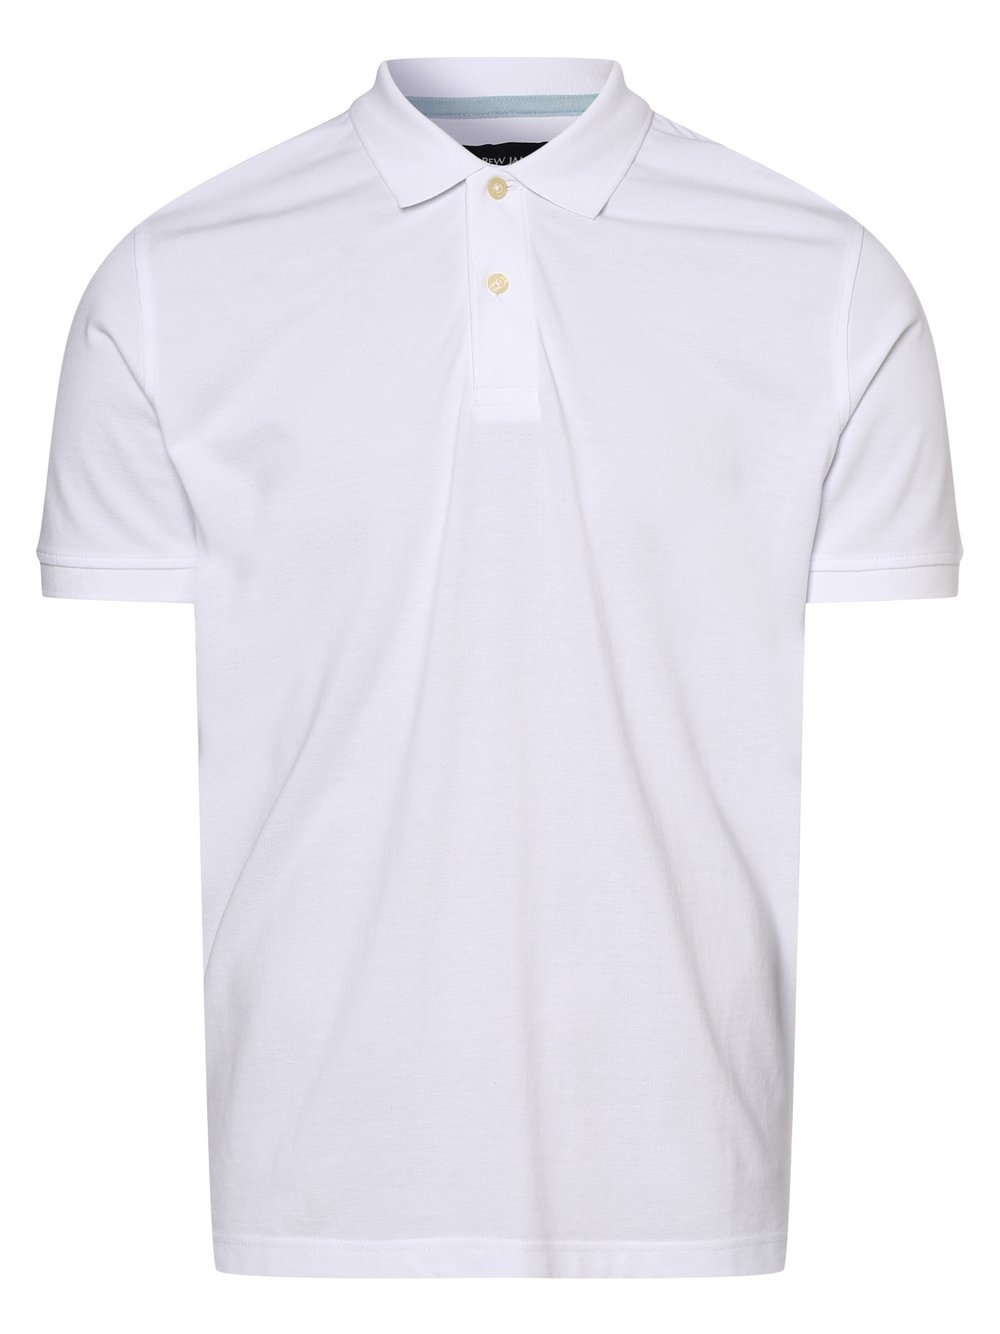 Andrew James - Męska koszulka polo, biały